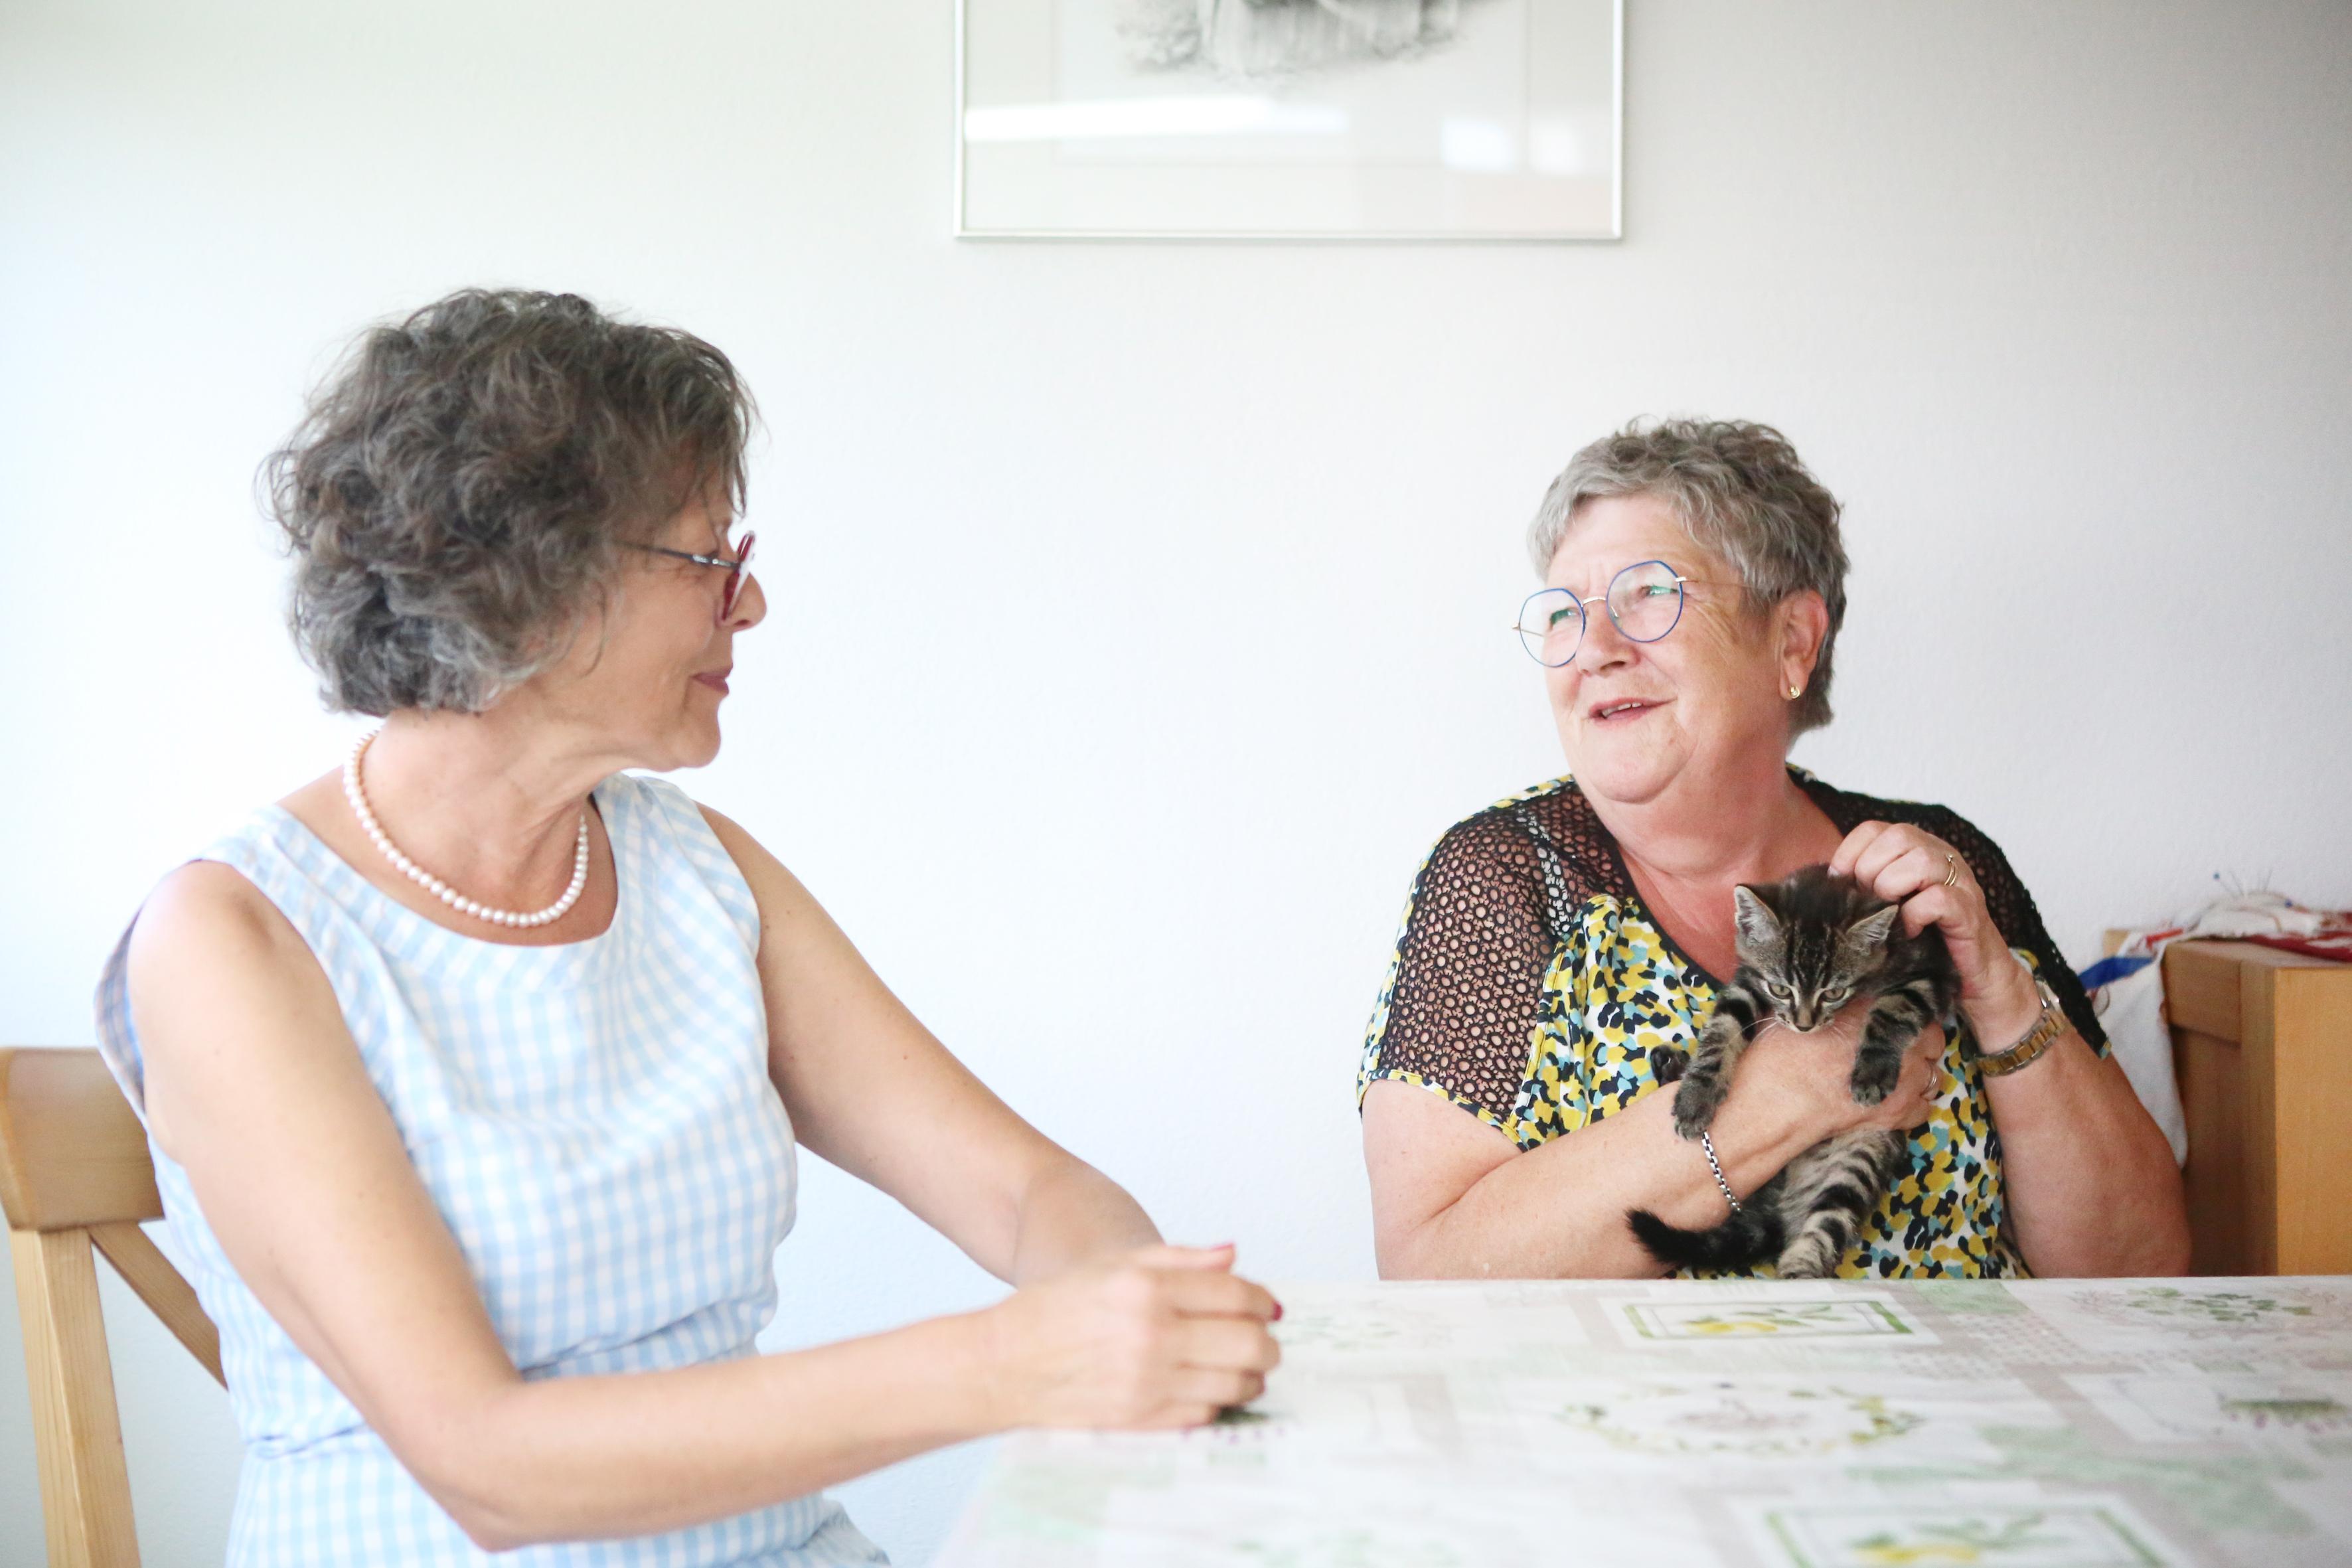 Martine Pipoz et Imelda Morard sont assises à une table et discutent. Imelda Morard caresse un petit chat qu’elle tient dans ses bras.